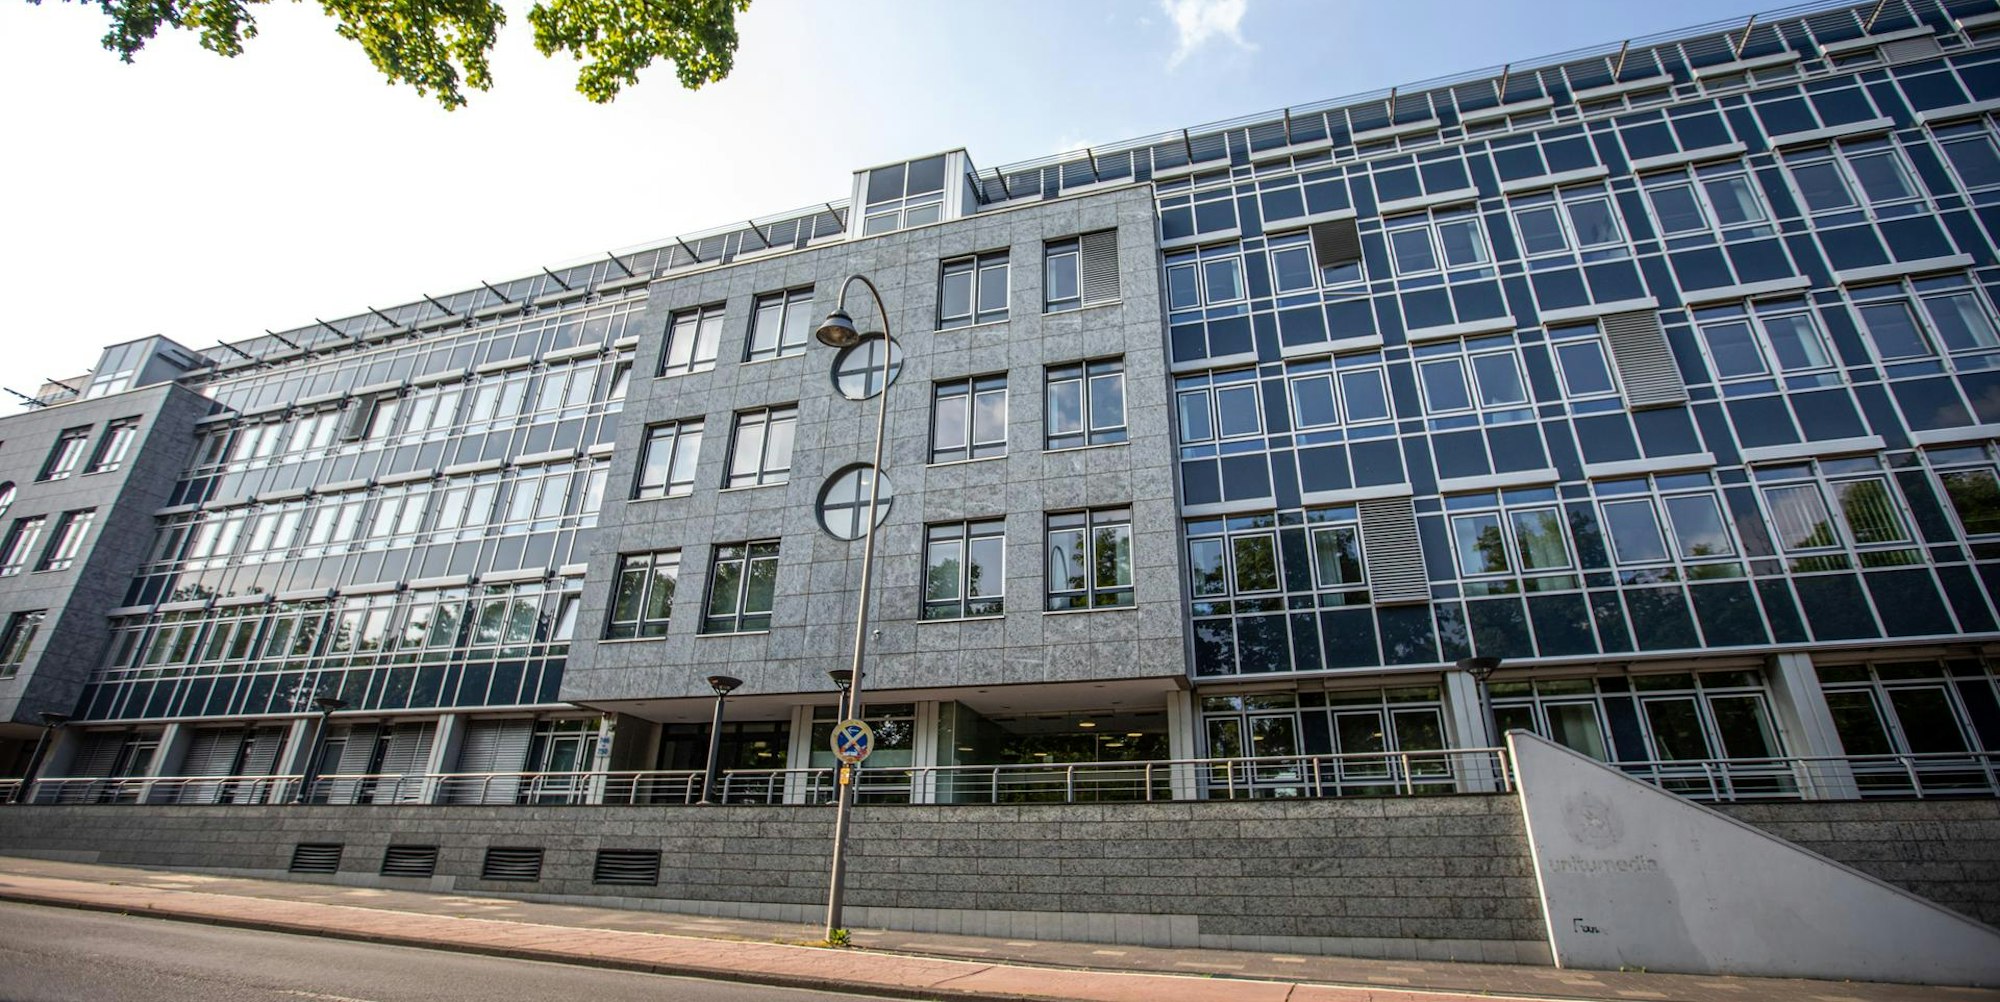 Das Bürogebäude des Unternehmens Vodafone (vormals Unitymedia) auf der Aachener Straße in Köln